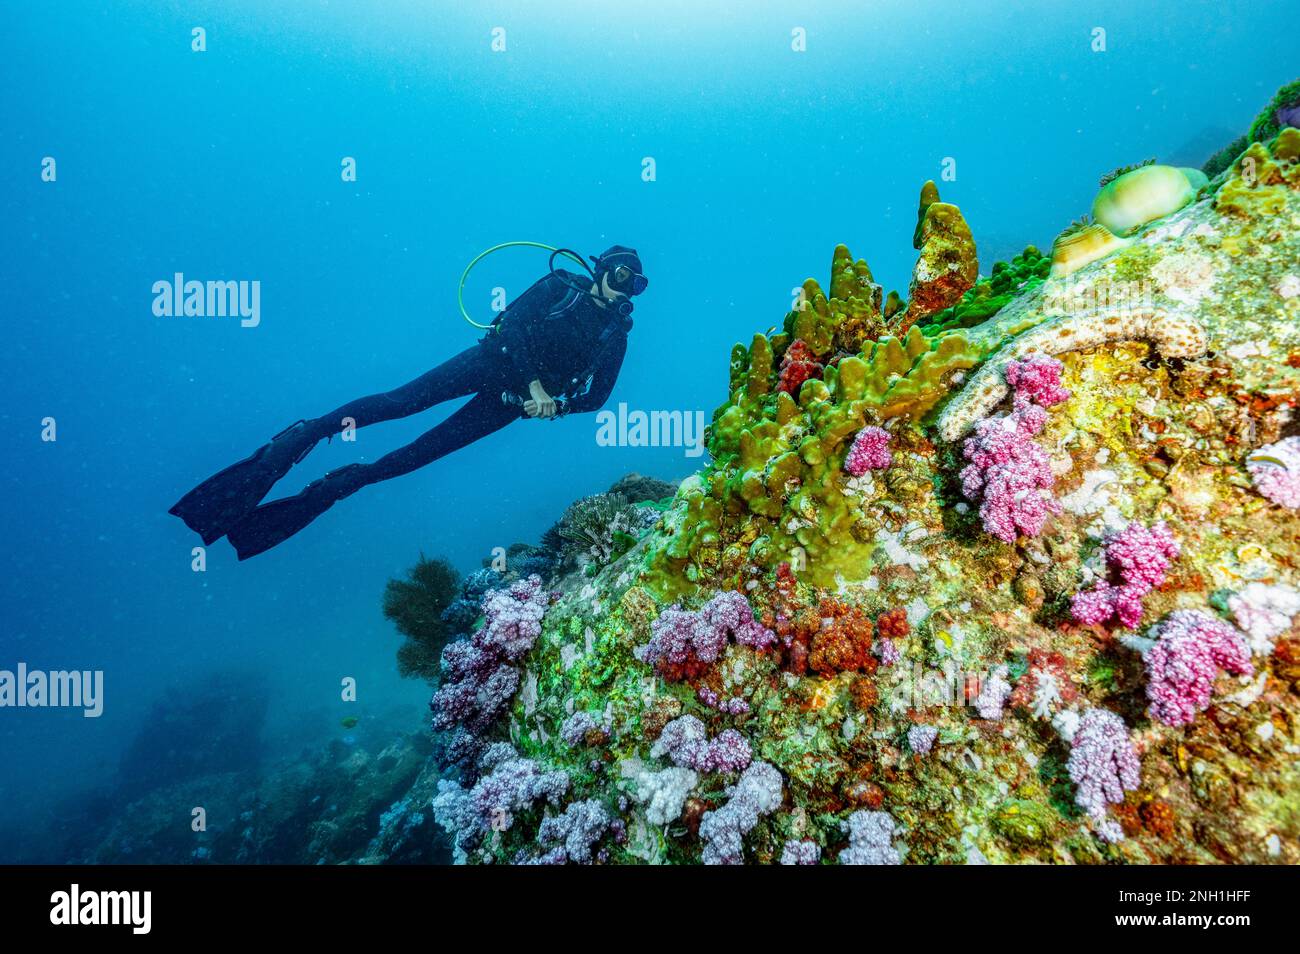 taucher erkunden das klare Wasser der Andamanensee/Thailand Stockfoto